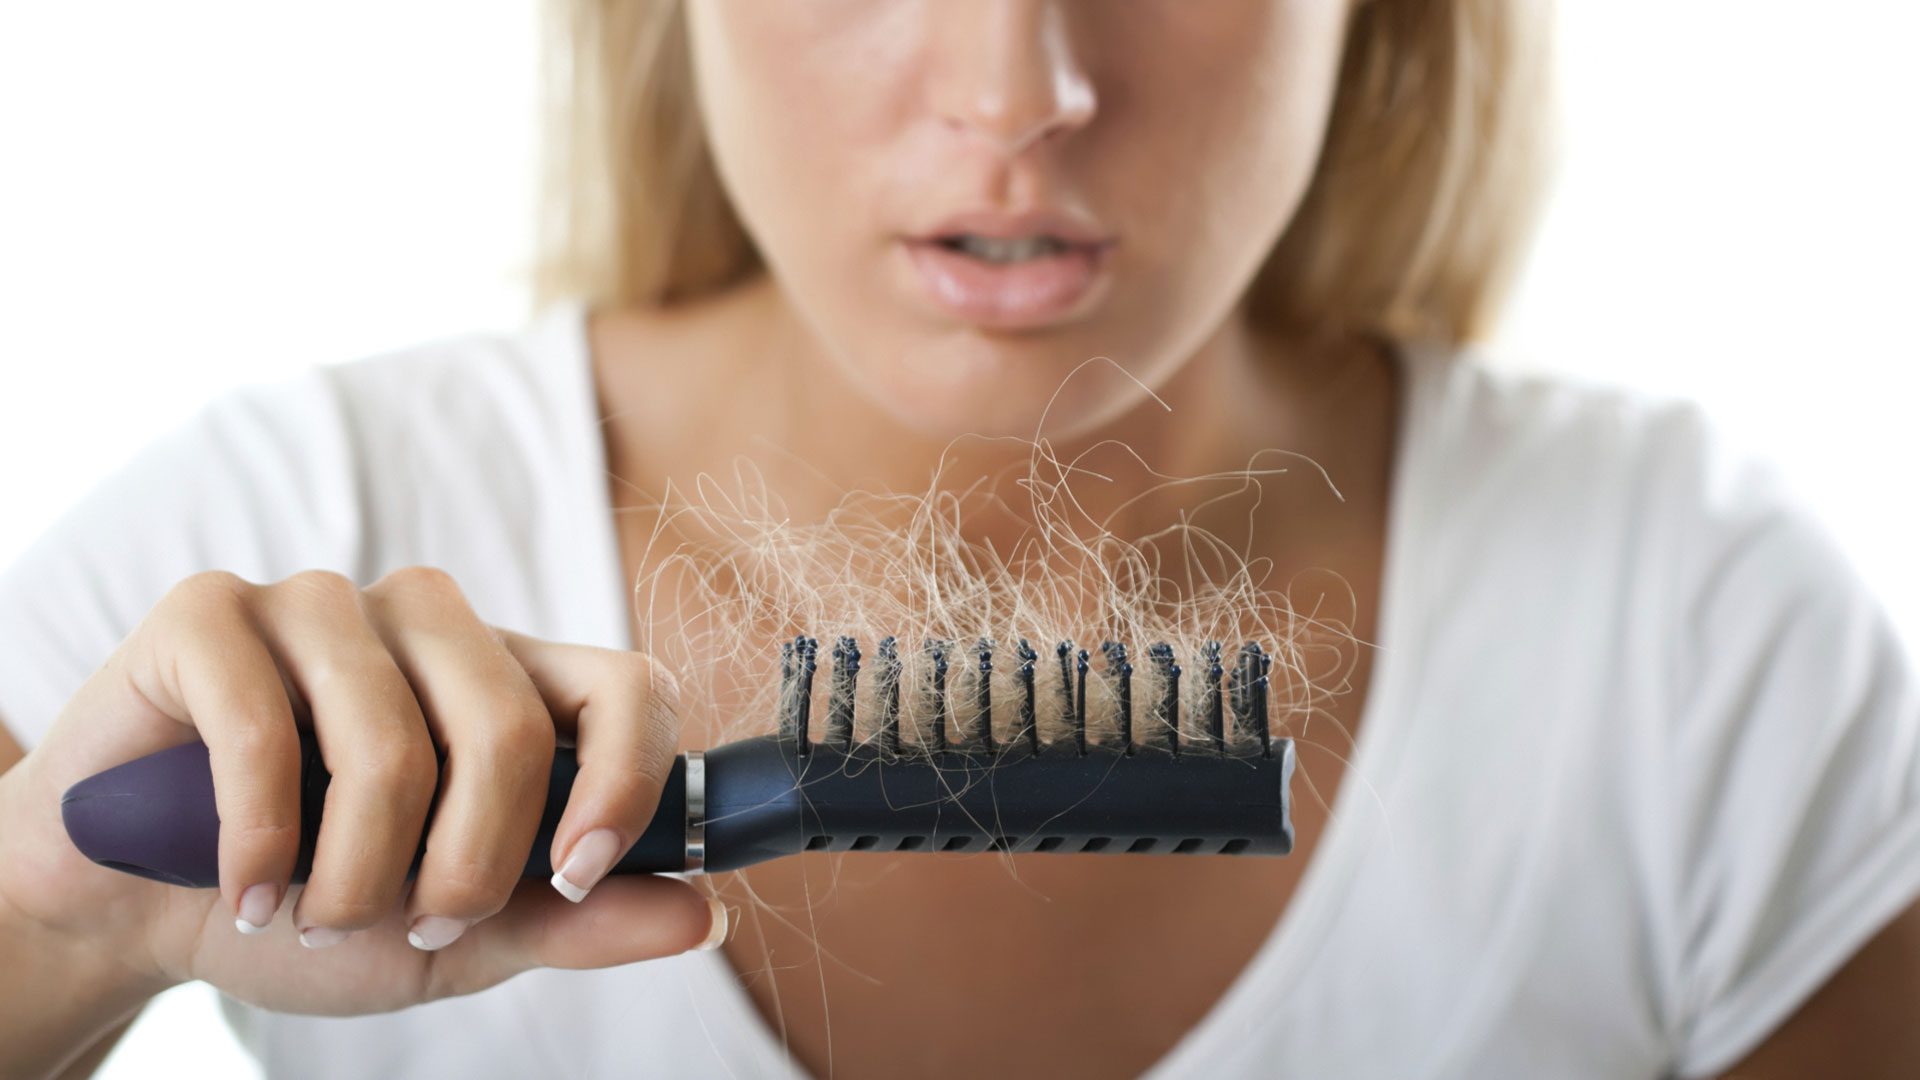 دلیل ریزش مو در افراد بالغ شده بعد از سال 2000 چیست؟